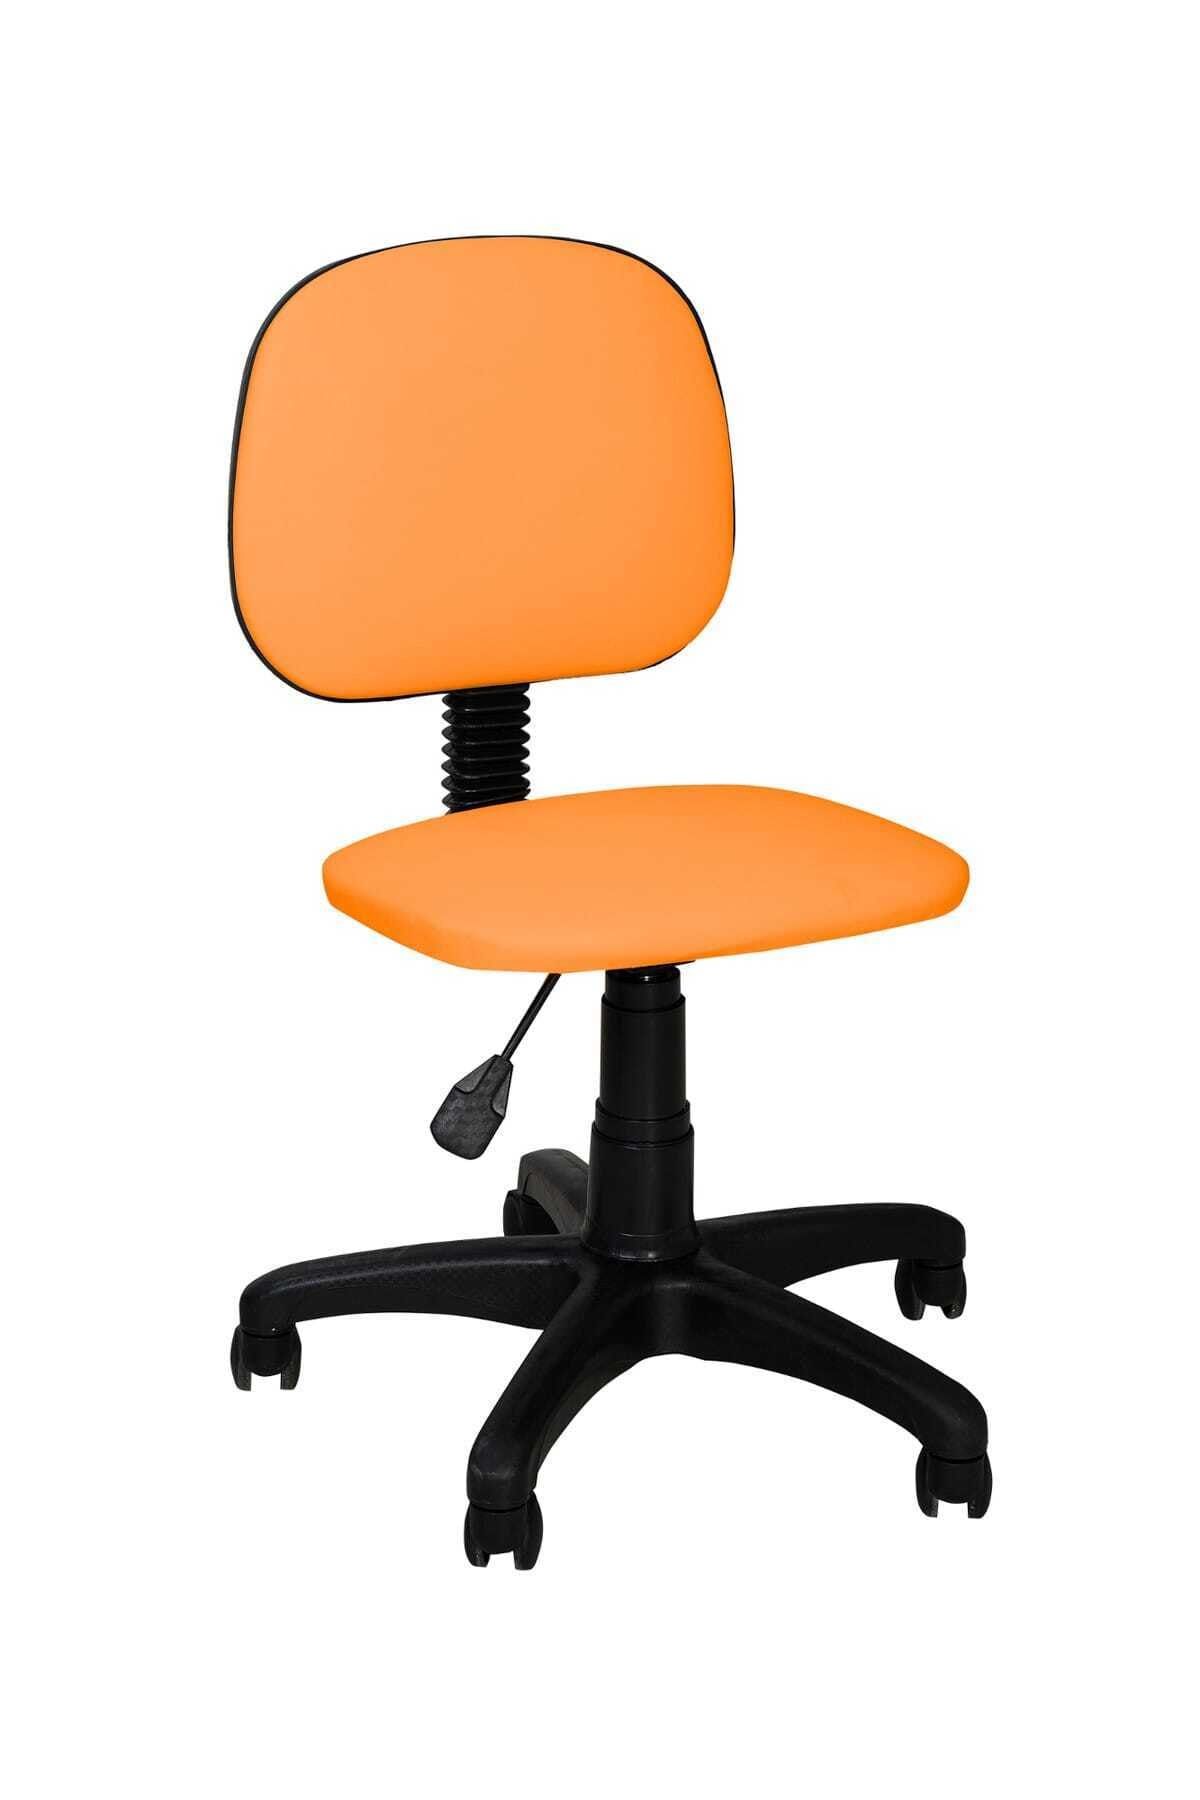 TOMAR Cgn Kolsuz Çalışma Sandalyesi Sekreter Koltuğu Öğrenci Sandalyesi Ofis Ve Büro Sandalyesi- Turuncu